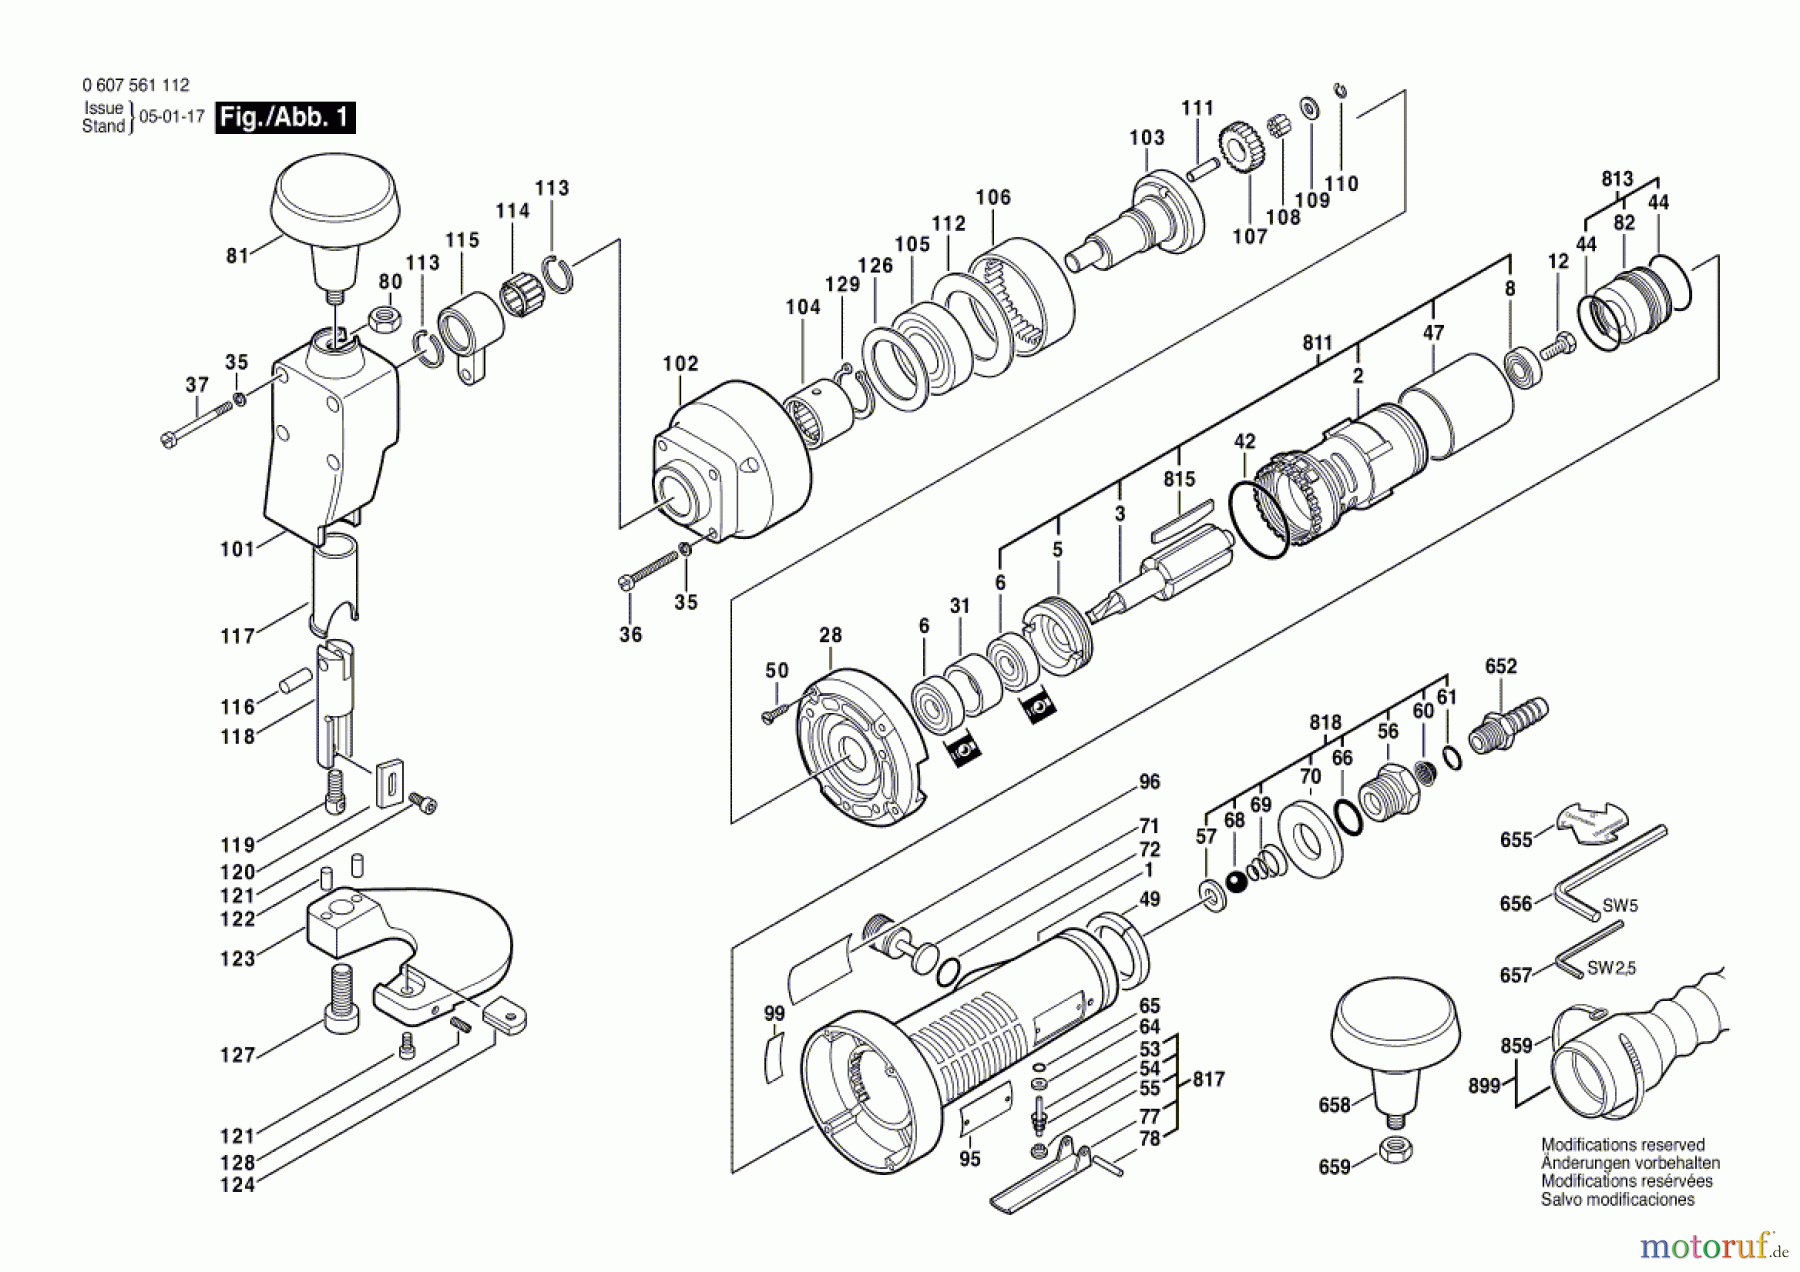  Bosch Werkzeug Pw-Blechschere 400 WATT-SERIE Seite 1